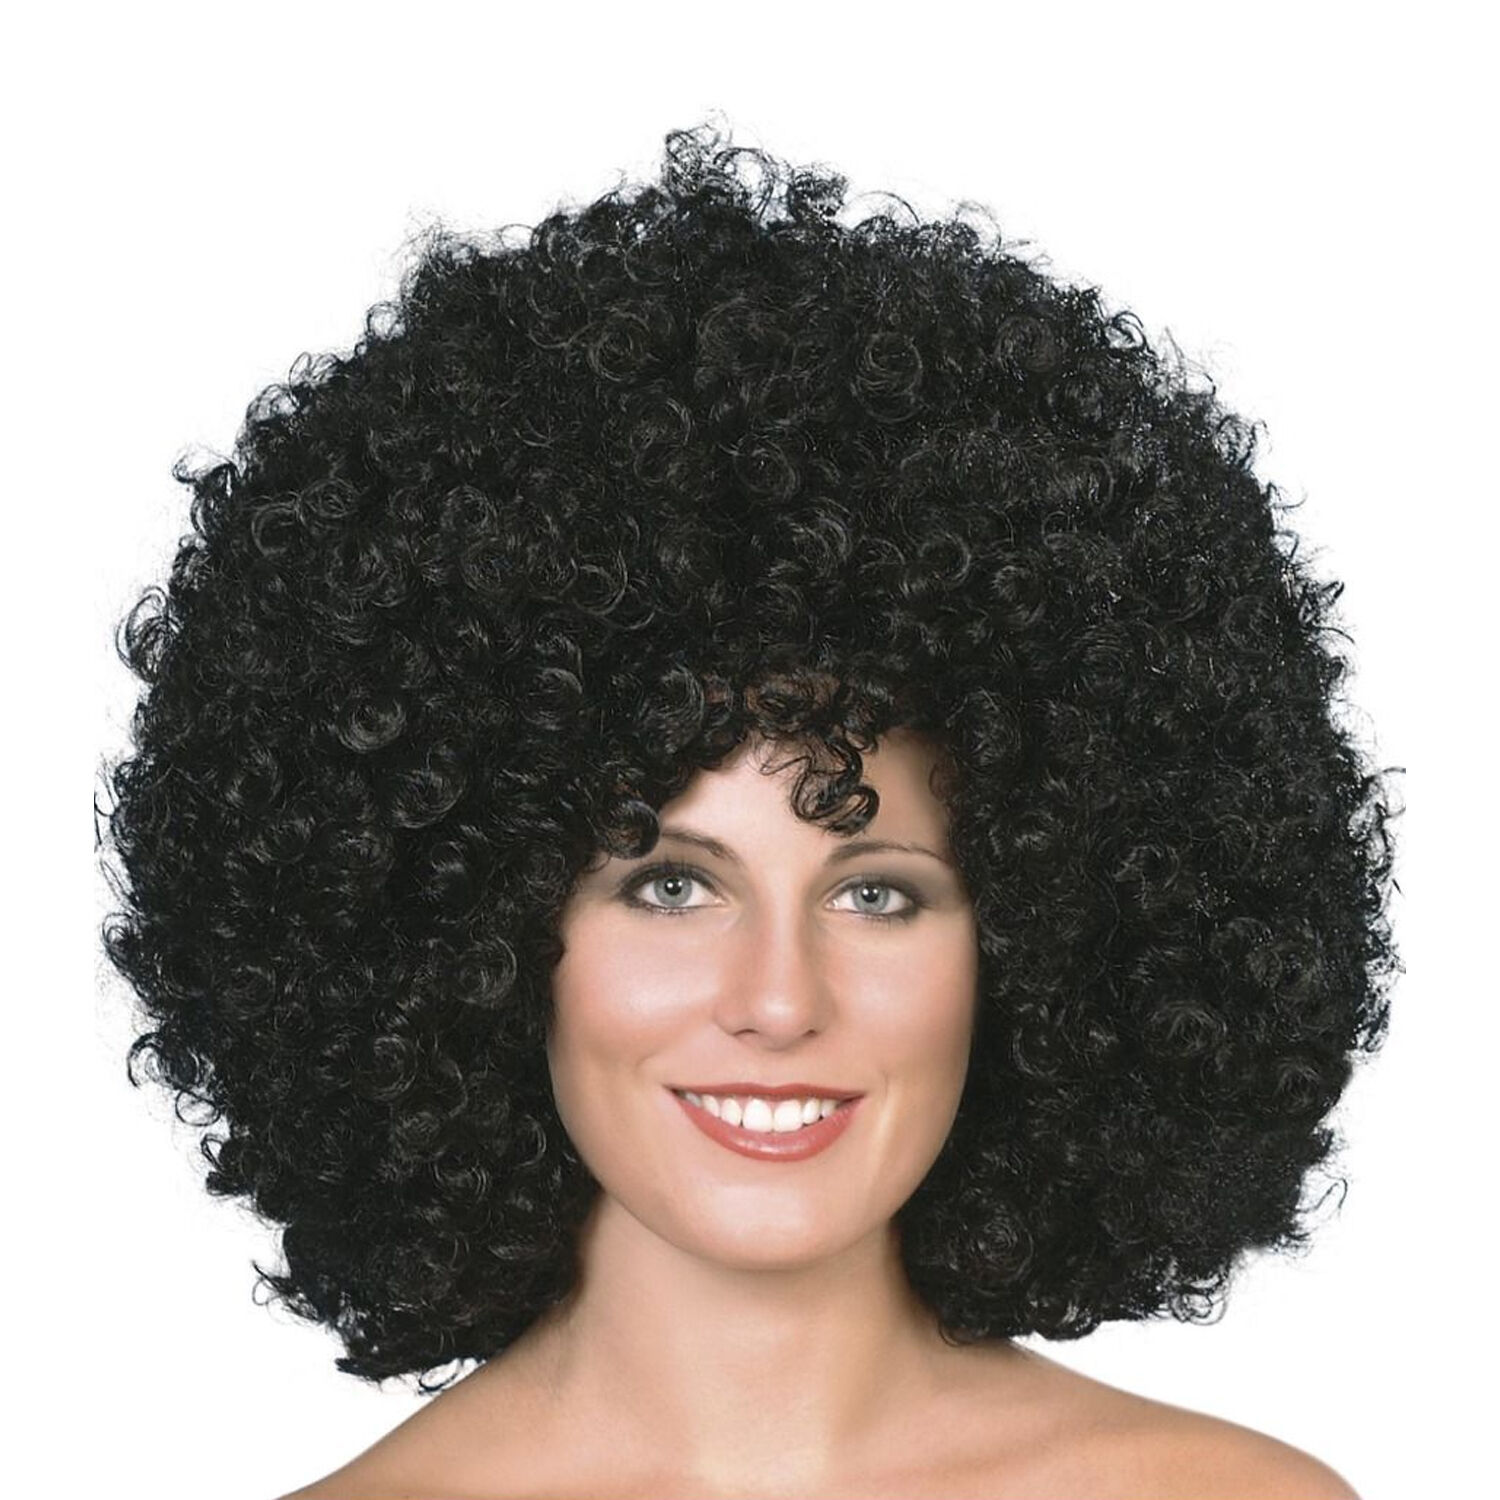 NEU Perücke Unisex Super-Riesen-Afro Locken, schwarz - mit Haarnetz Bild 2